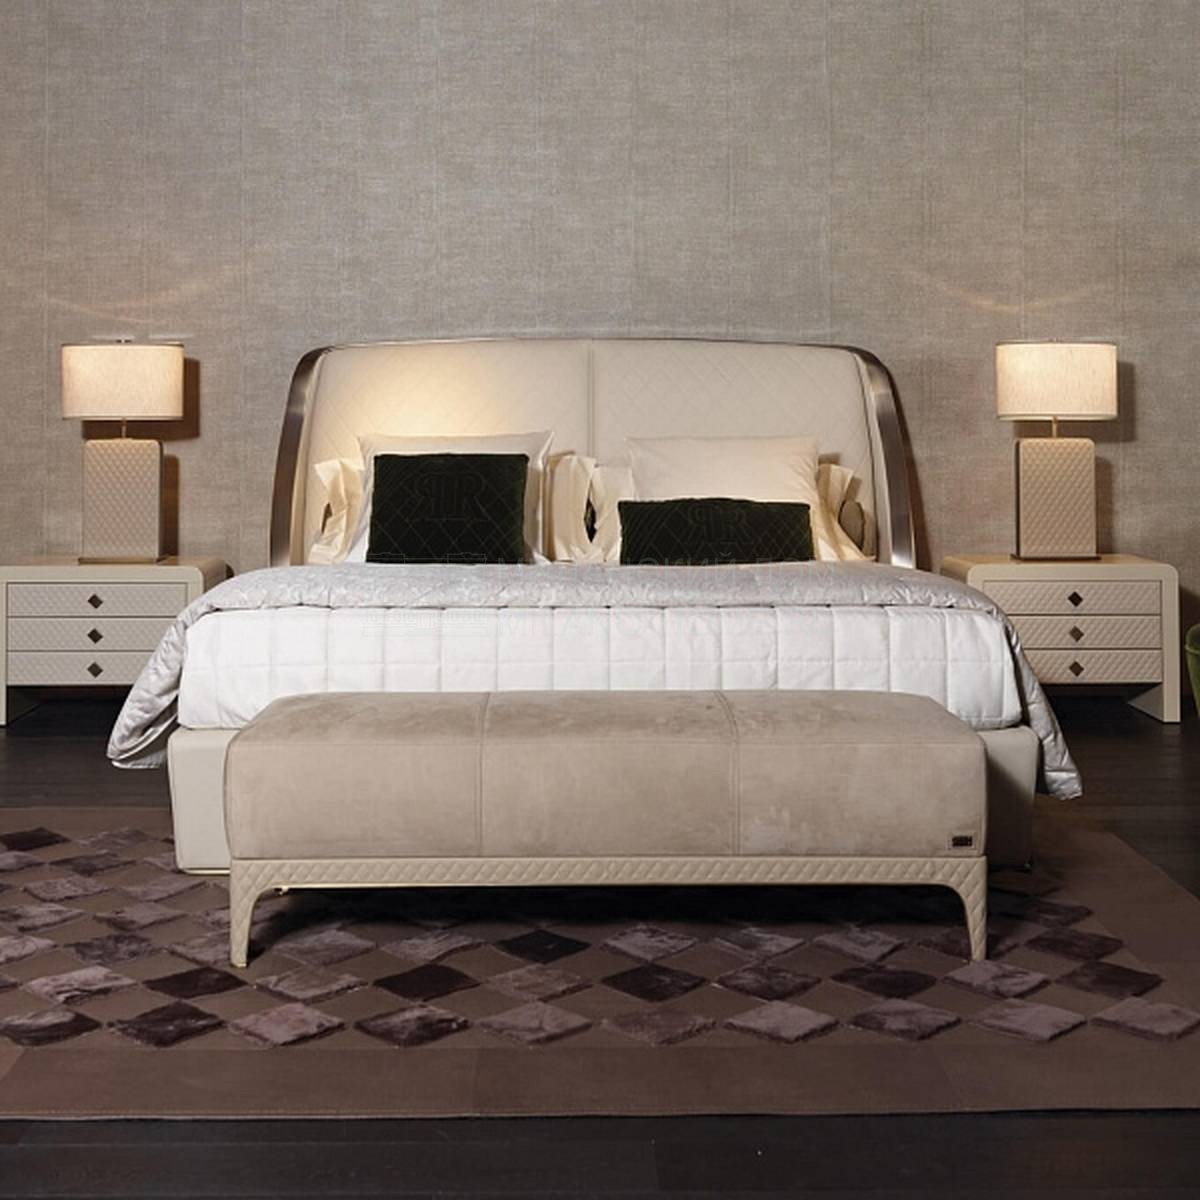 Кровать с мягким изголовьем Madam bed из Италии фабрики RUGIANO